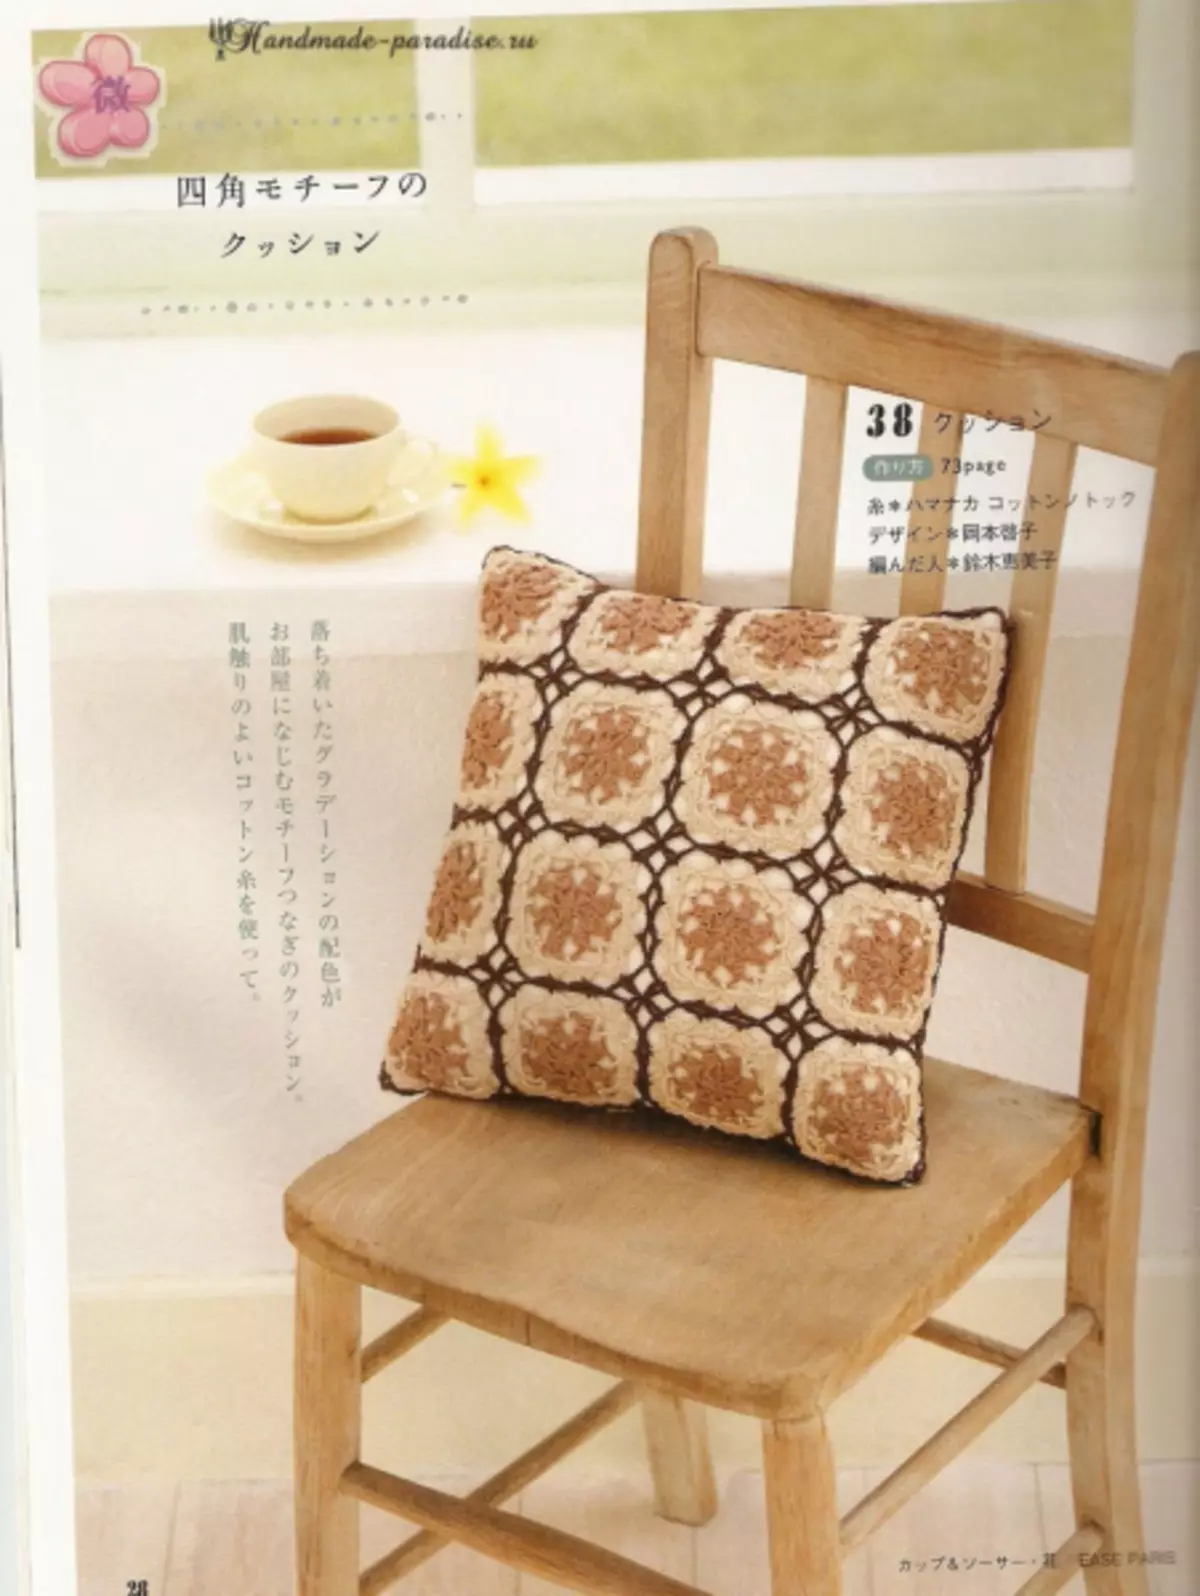 کرسی موسم گرما کی اشیاء. منصوبوں کے ساتھ جاپانی میگزین